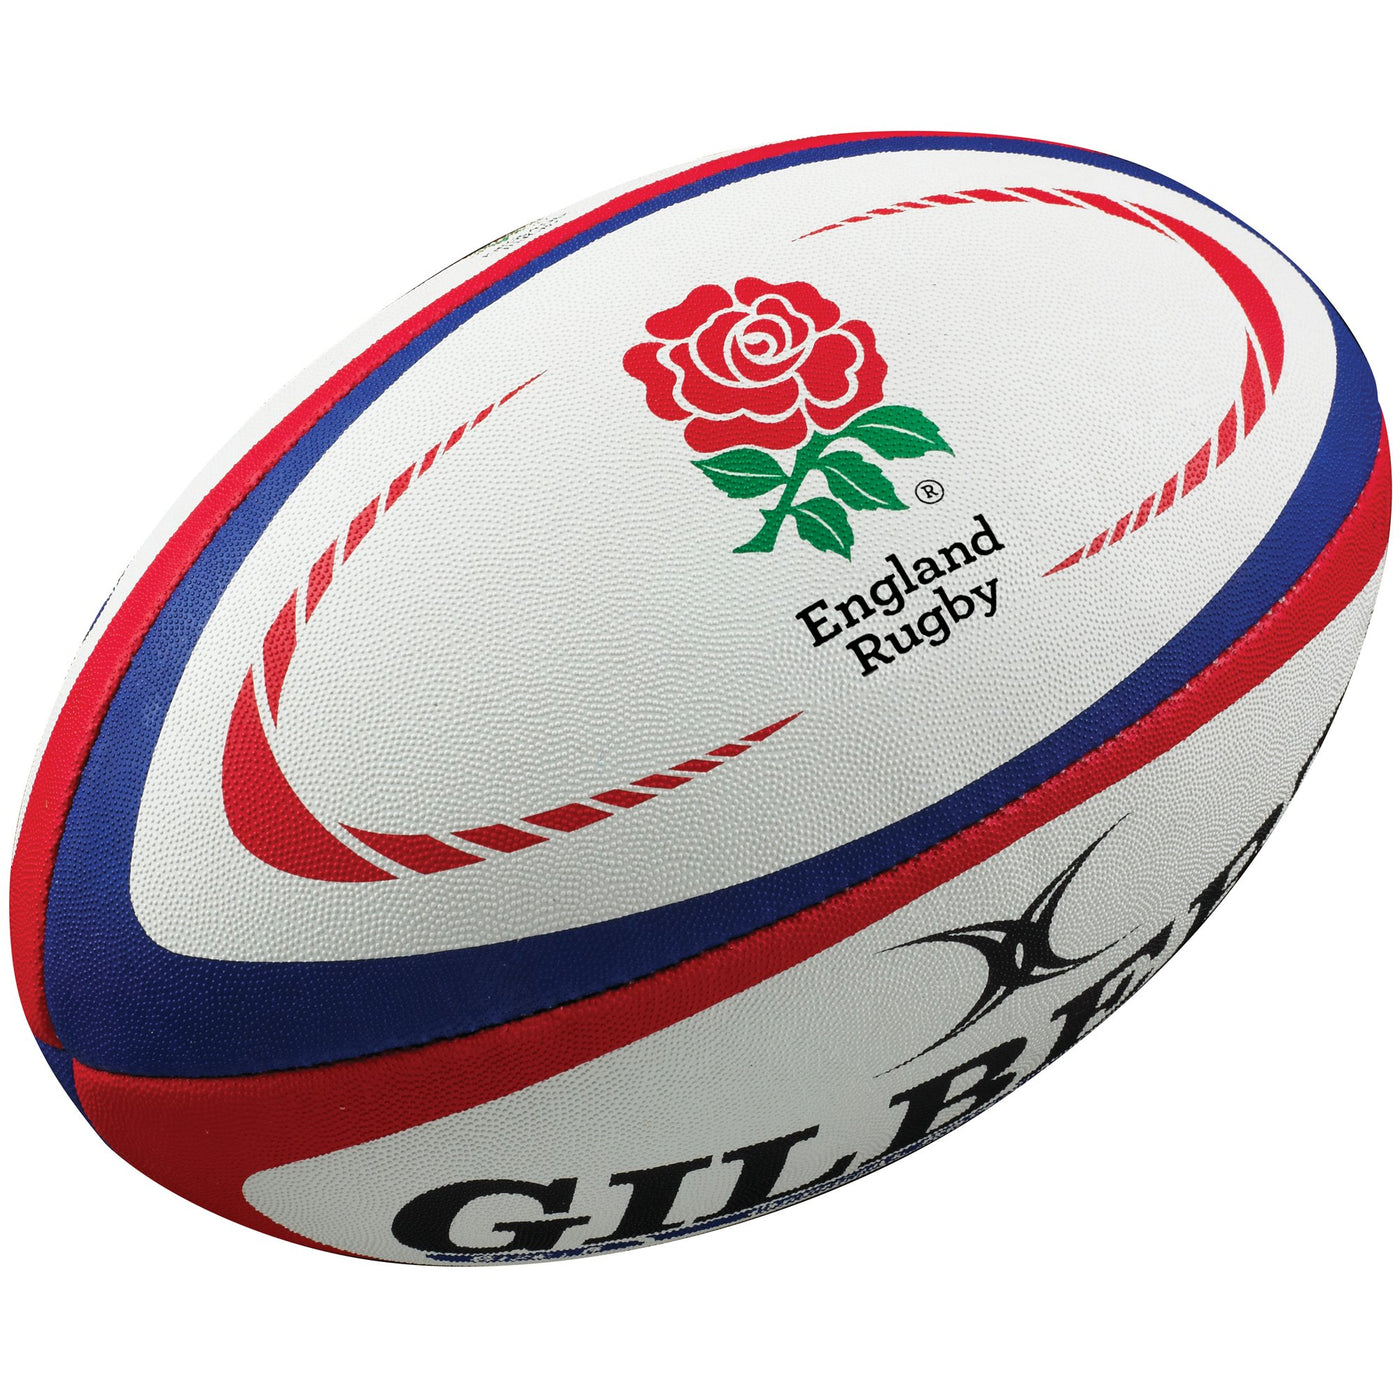 Ballon de Rugby Angleterre Replica Midi